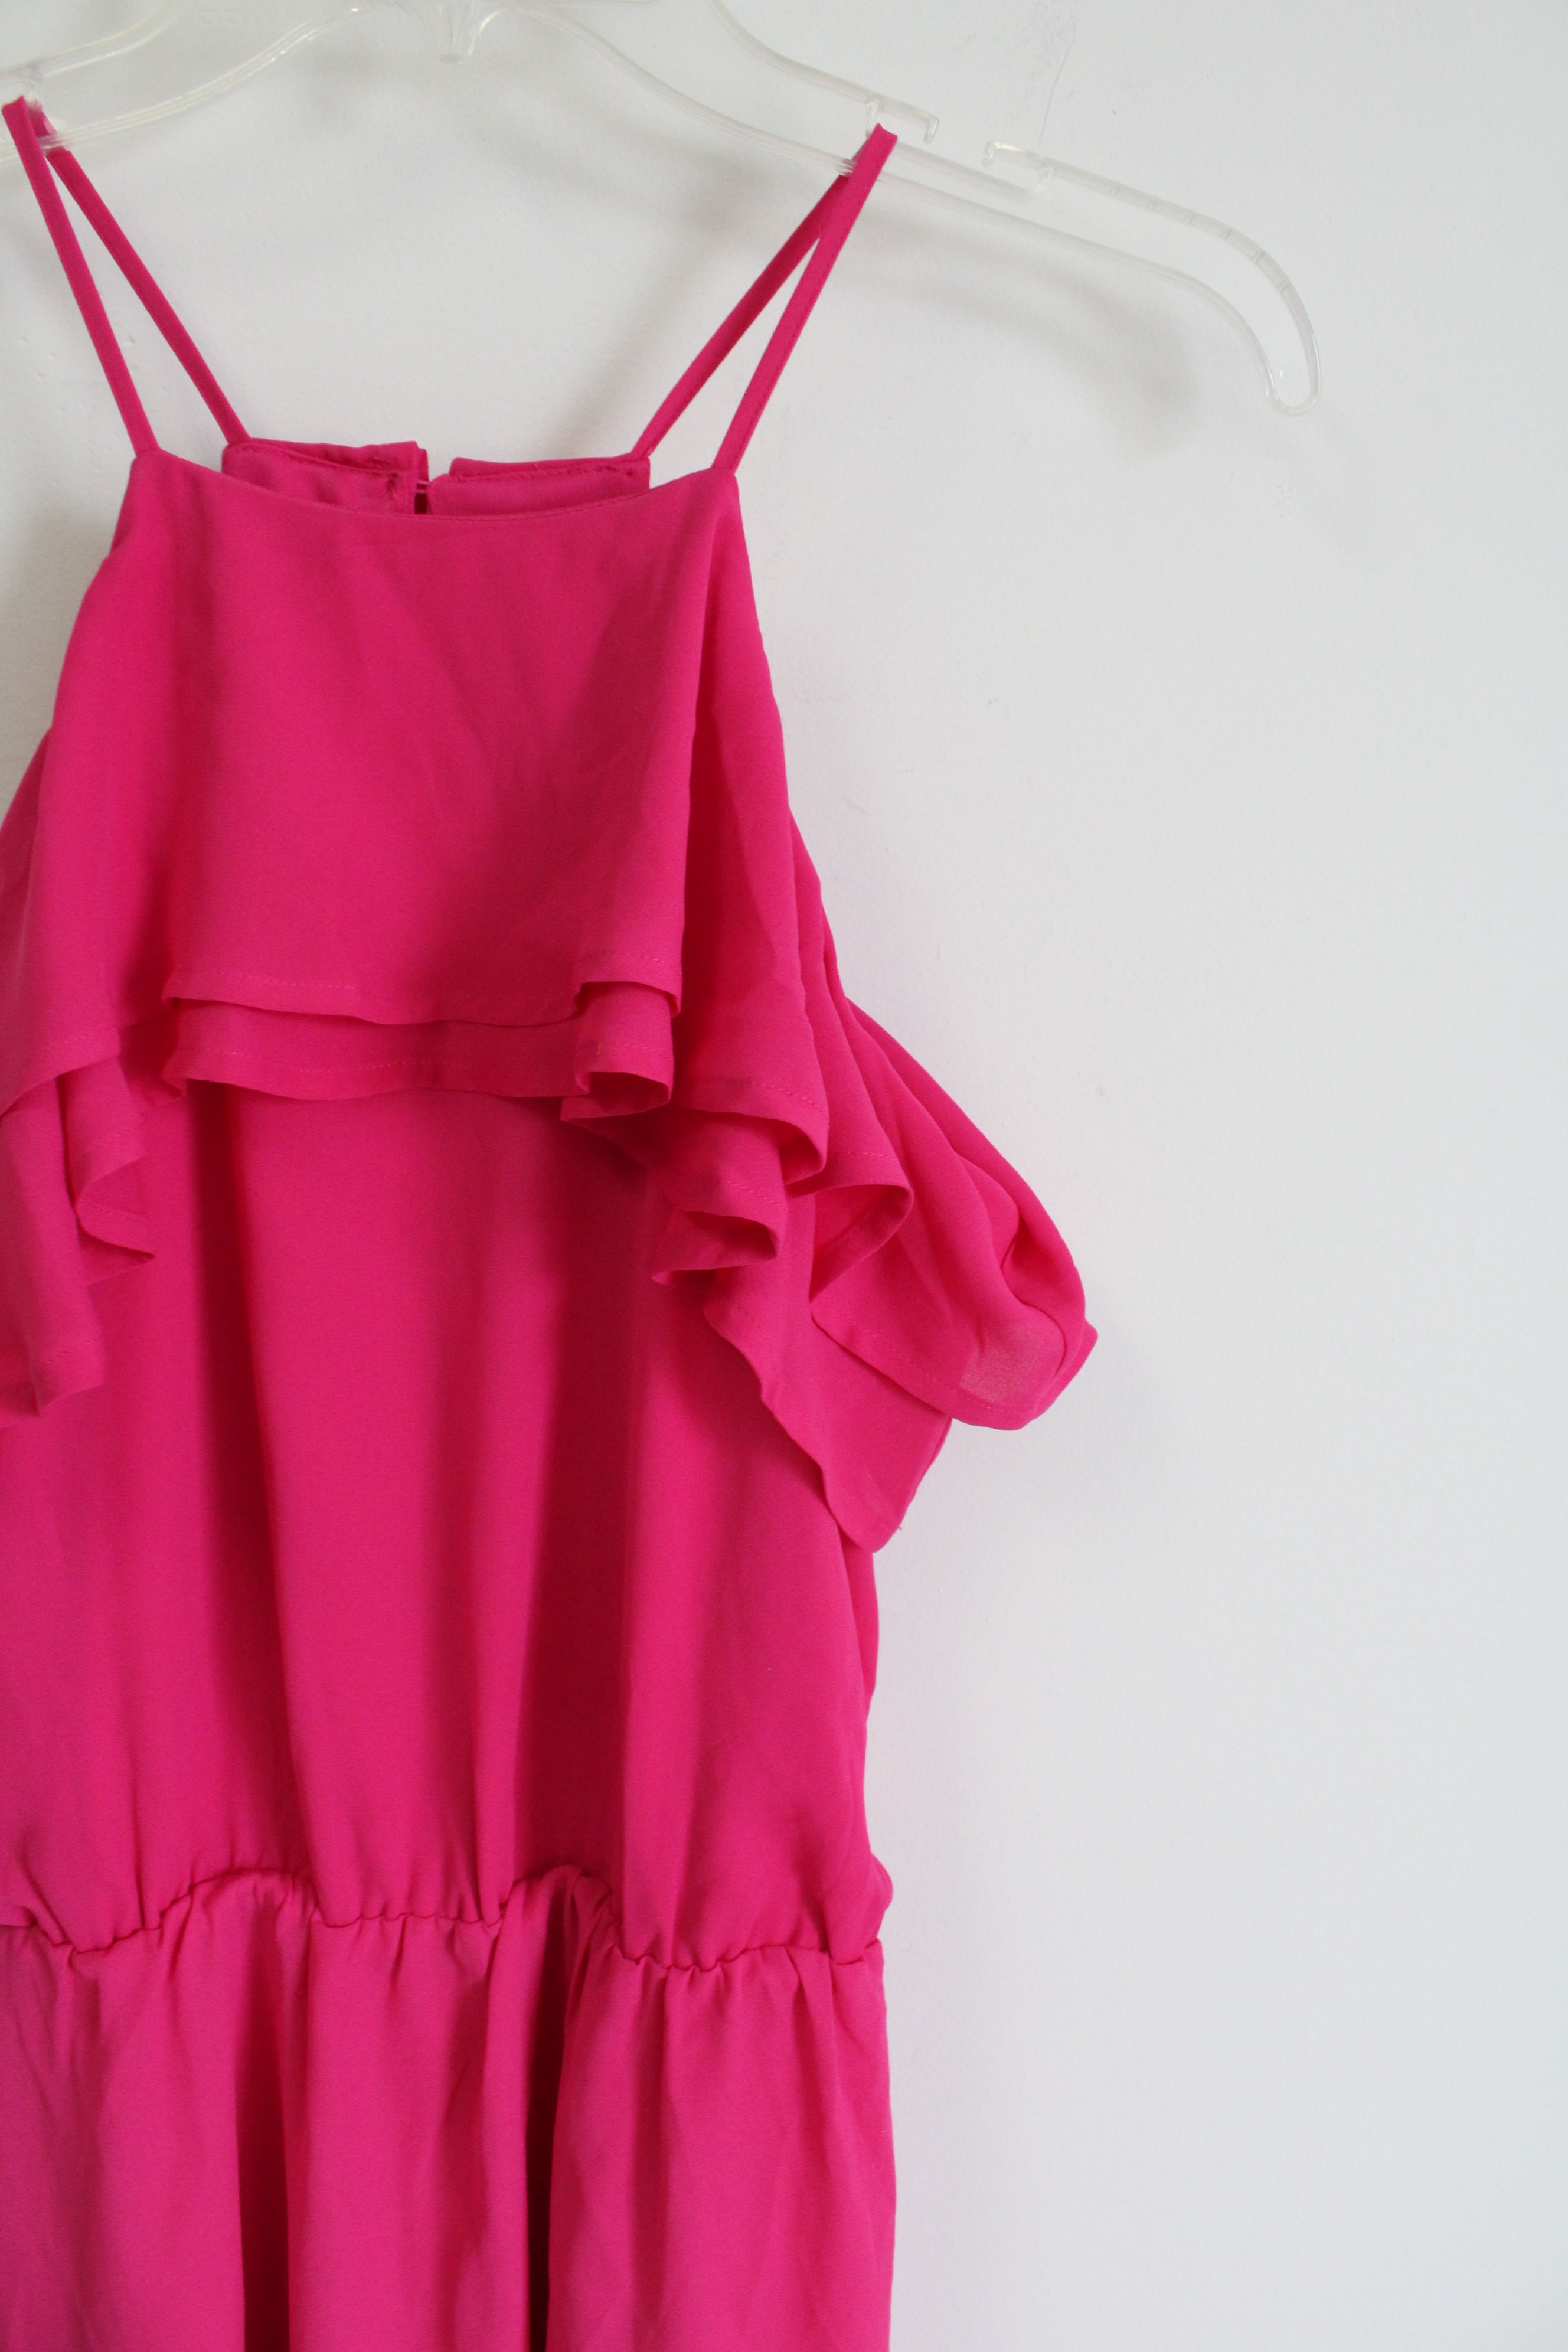 Maurices Hot Pink Ruffle Chiffon Dress | S